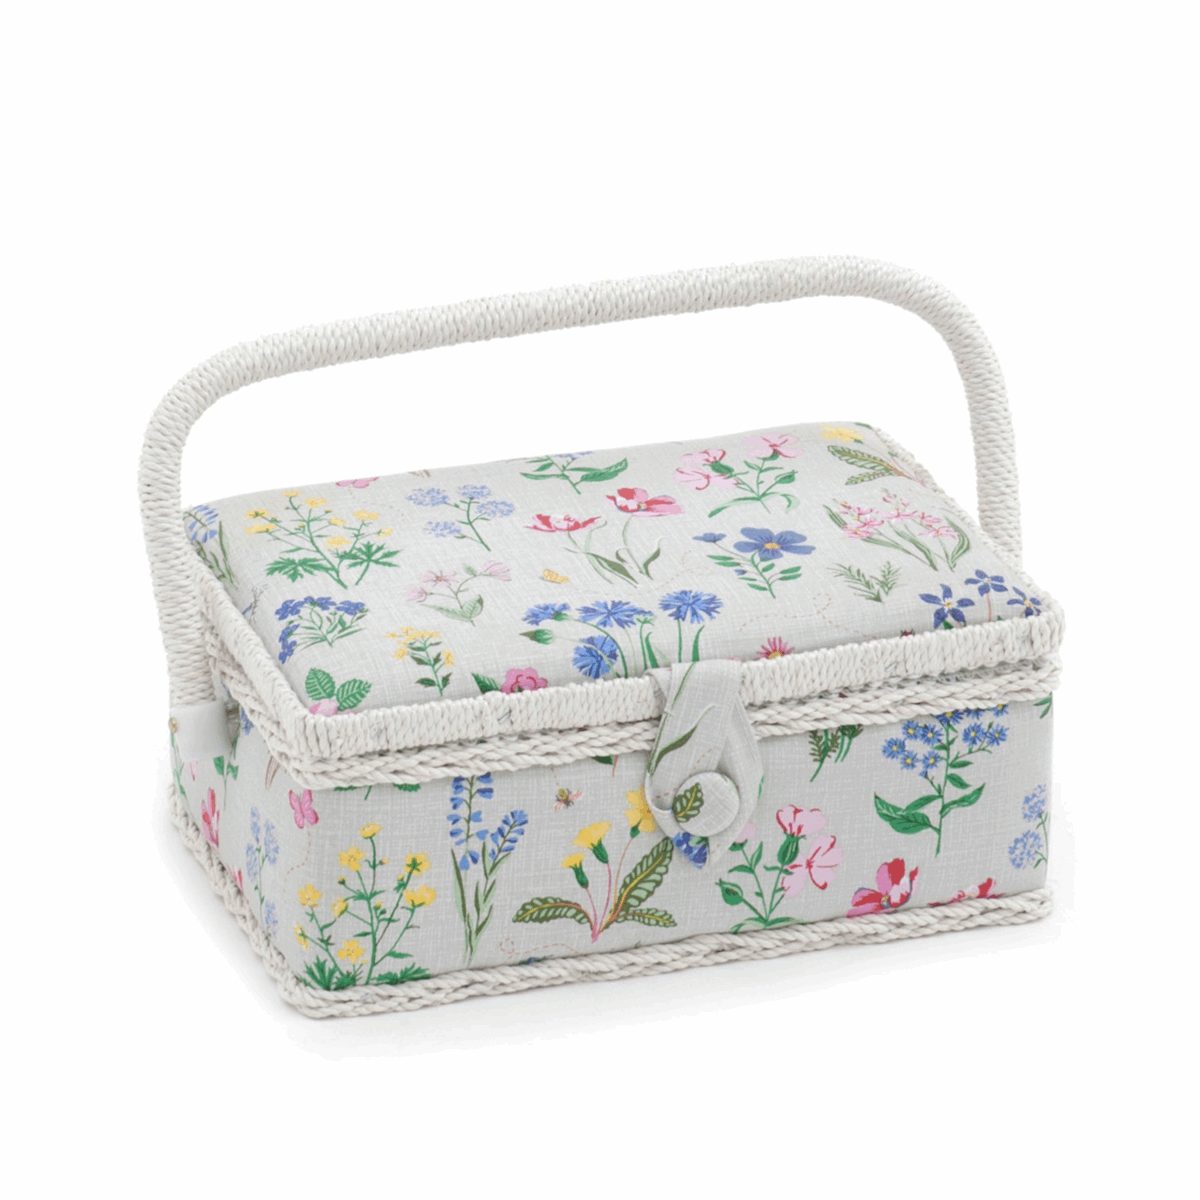 Spring Garden Sewing Box - Small